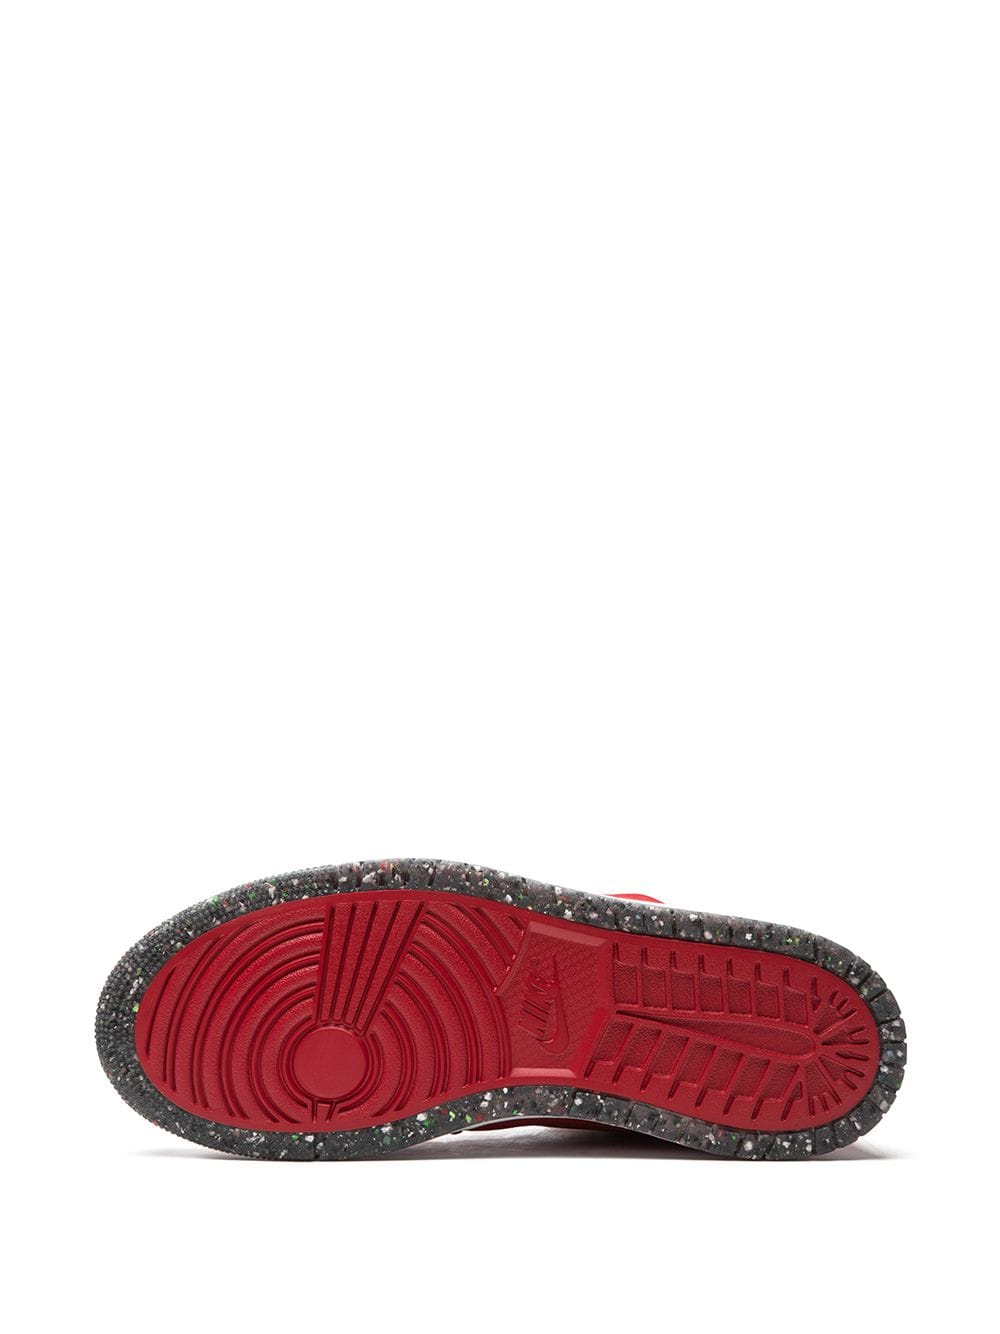 Shop Jordan 1 Zoom Cmft "red Suede" Sneakers